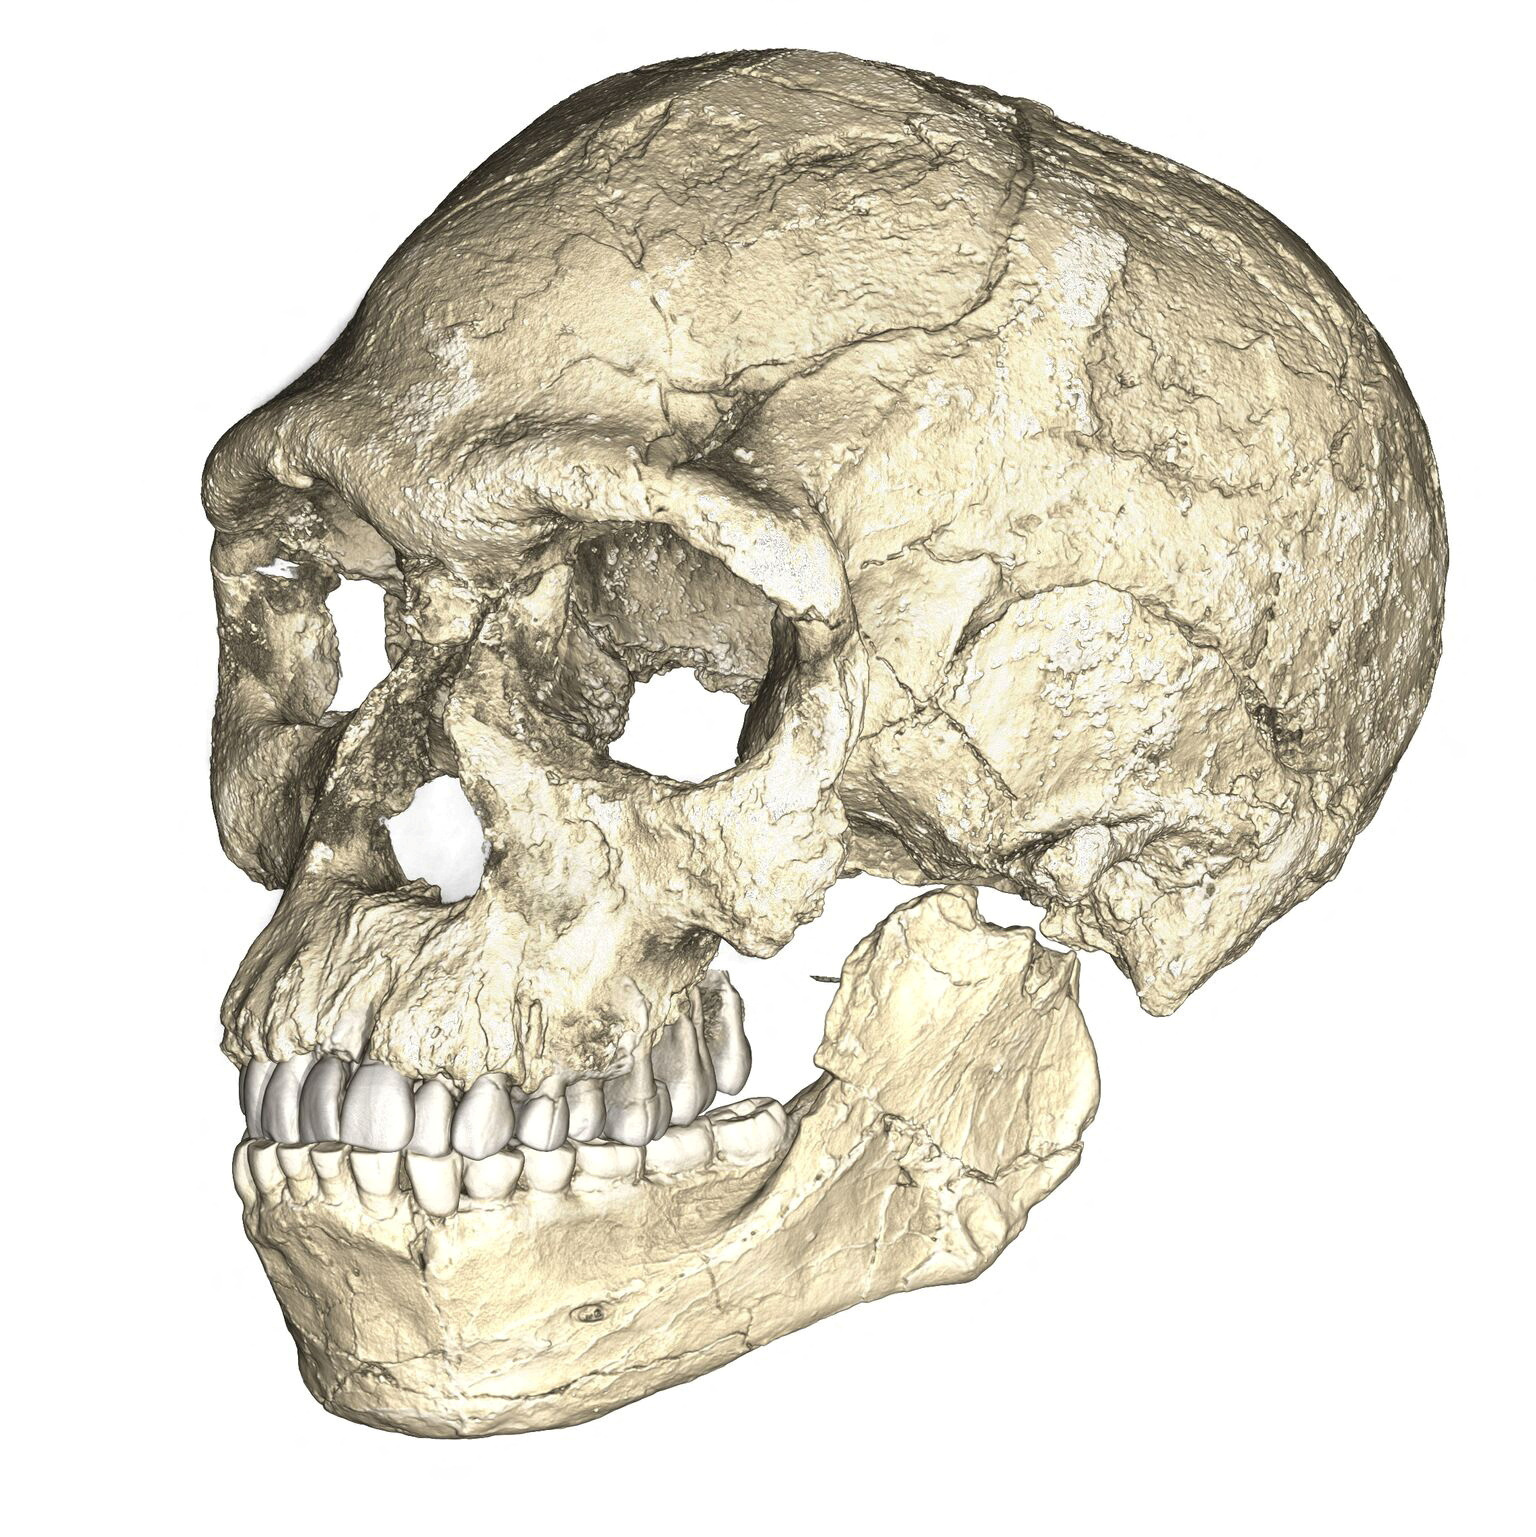 Una reconstrucción compuesta de los primeros fósiles de Homo sapiens conocidos de Jebel Irhoud en Marruecos, basada en escaneos microtomográficos computarizados de múltiples fósiles originales.